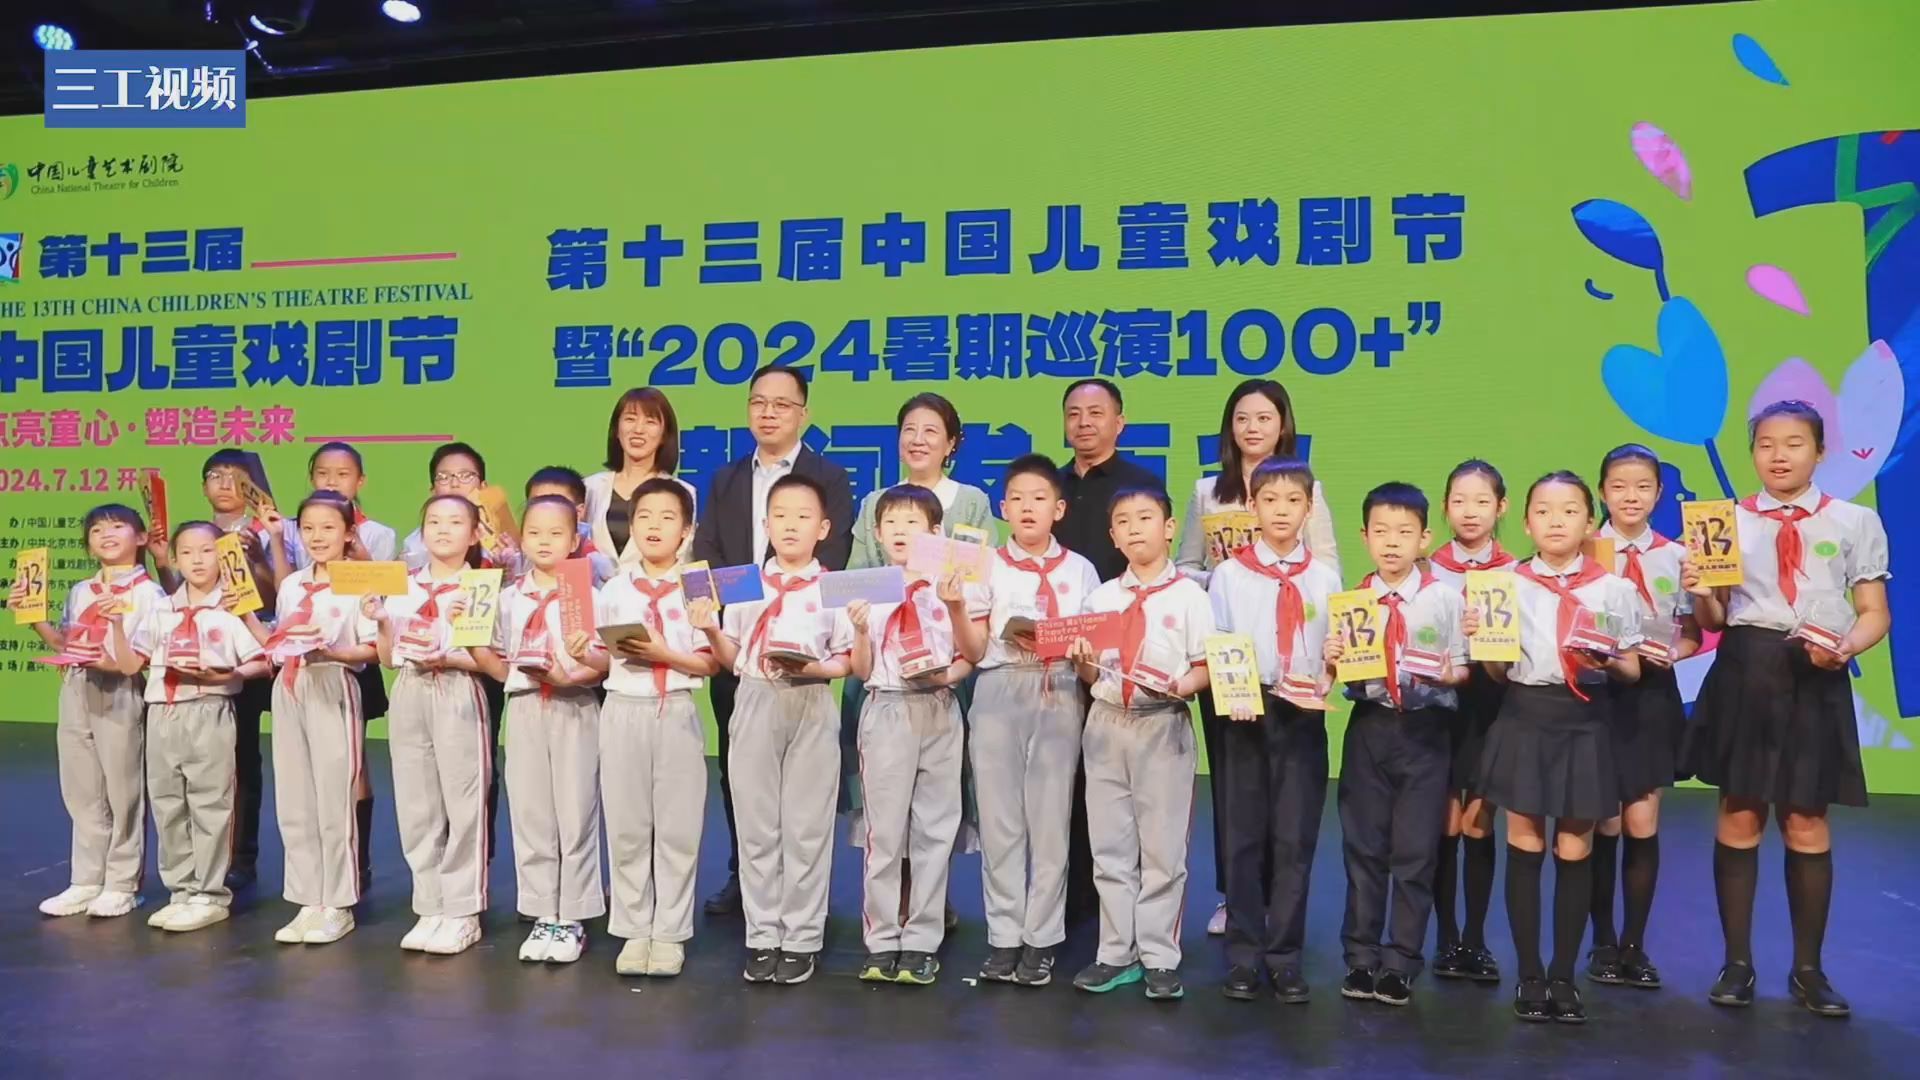 第十三届中国儿童戏剧节即将举办，为期38天汇聚8个国家33部剧目